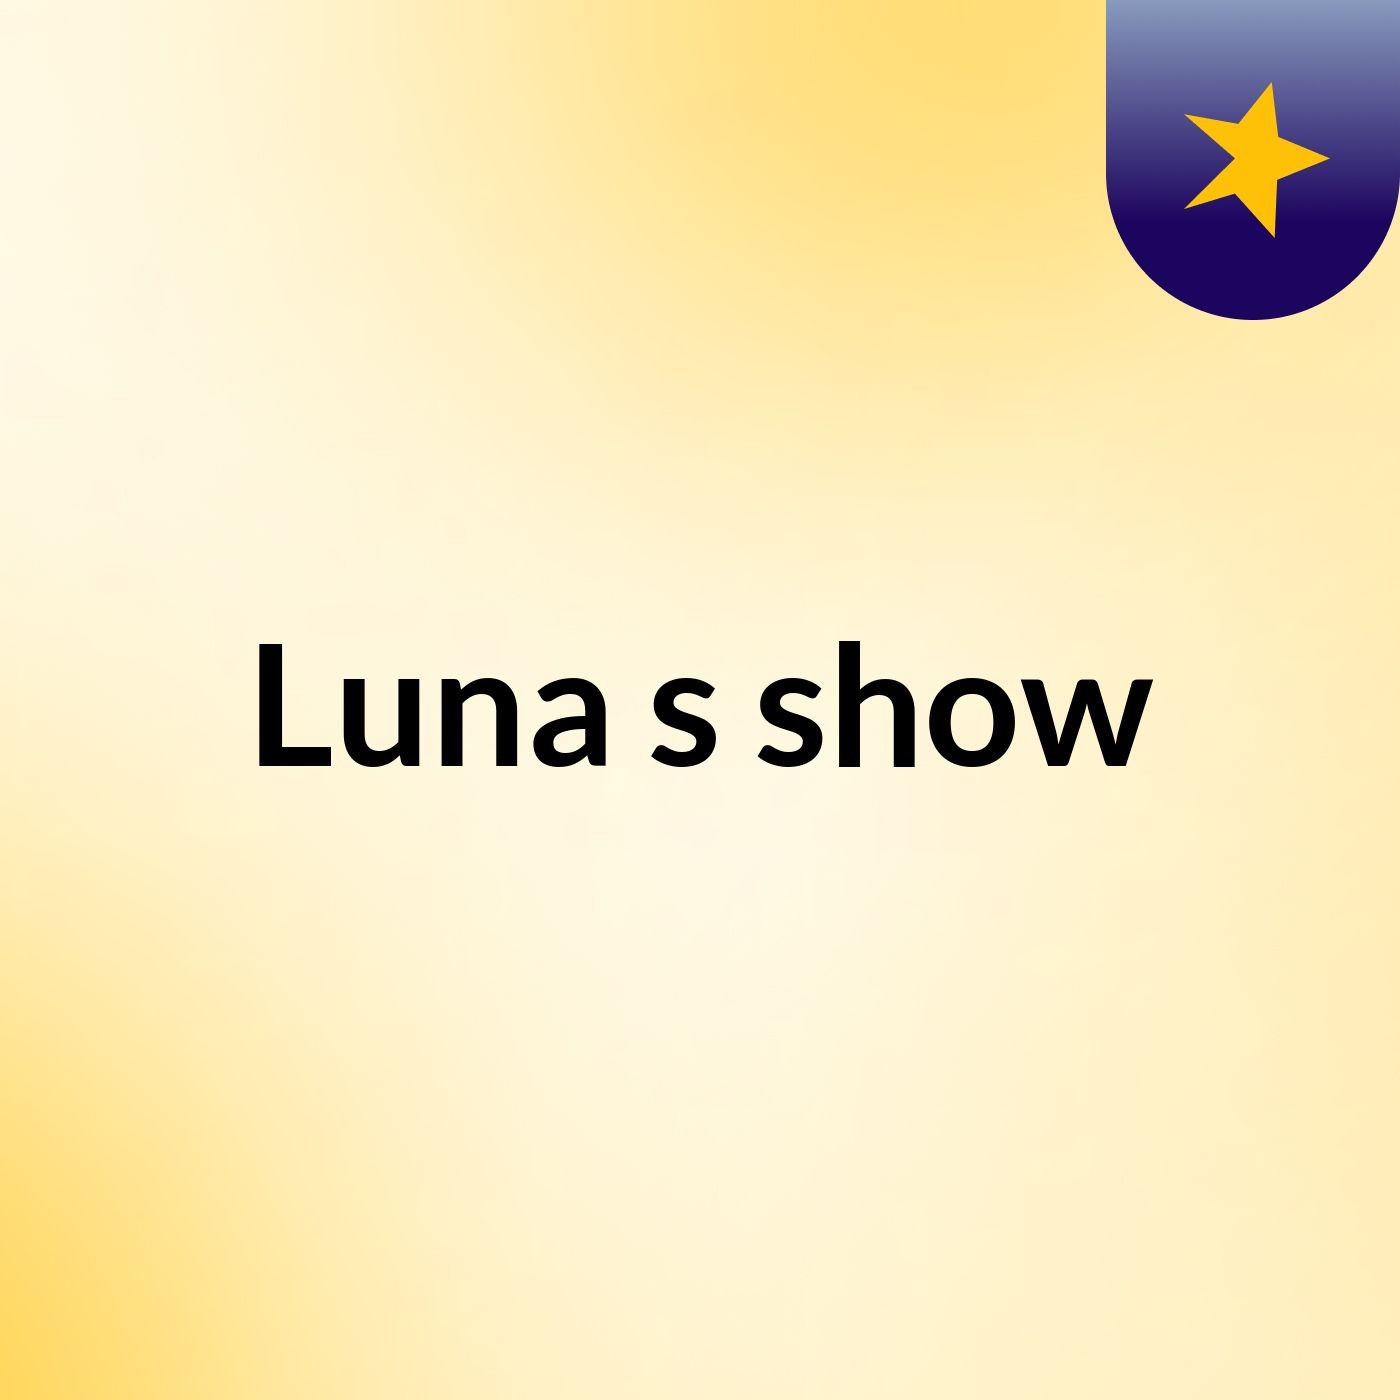 Luna's show